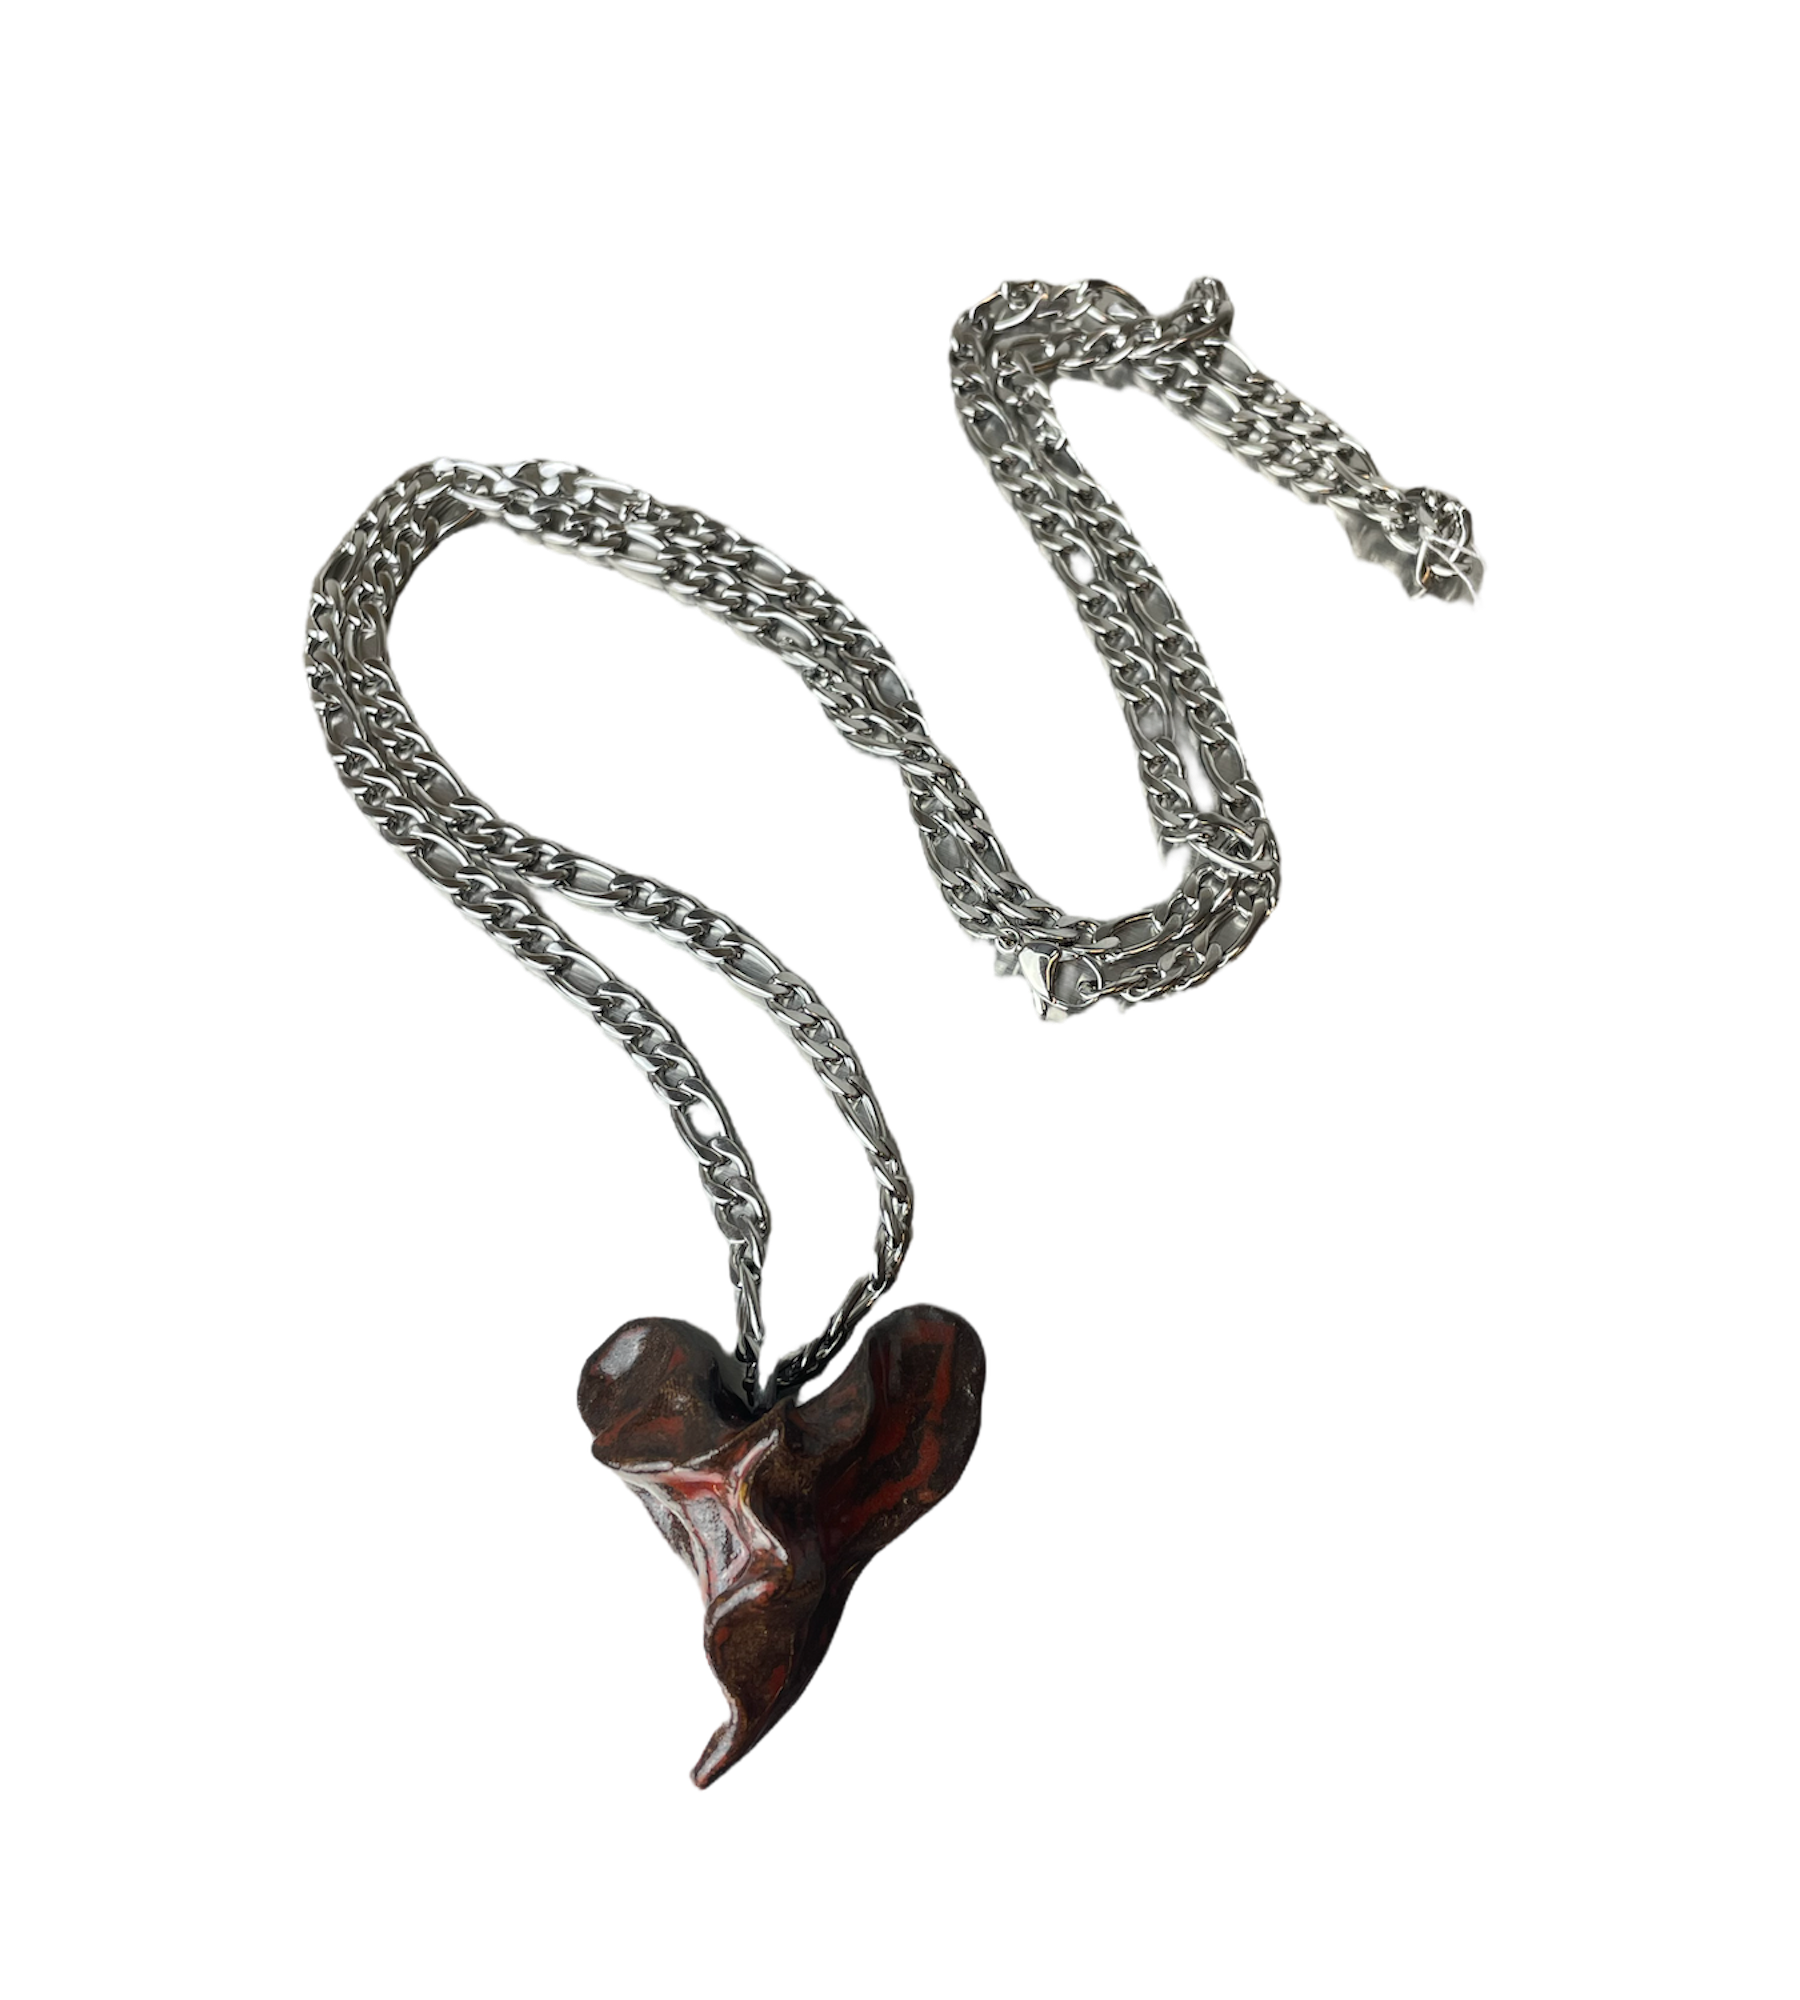 Ceramic Necklaces by Hanna Hänig